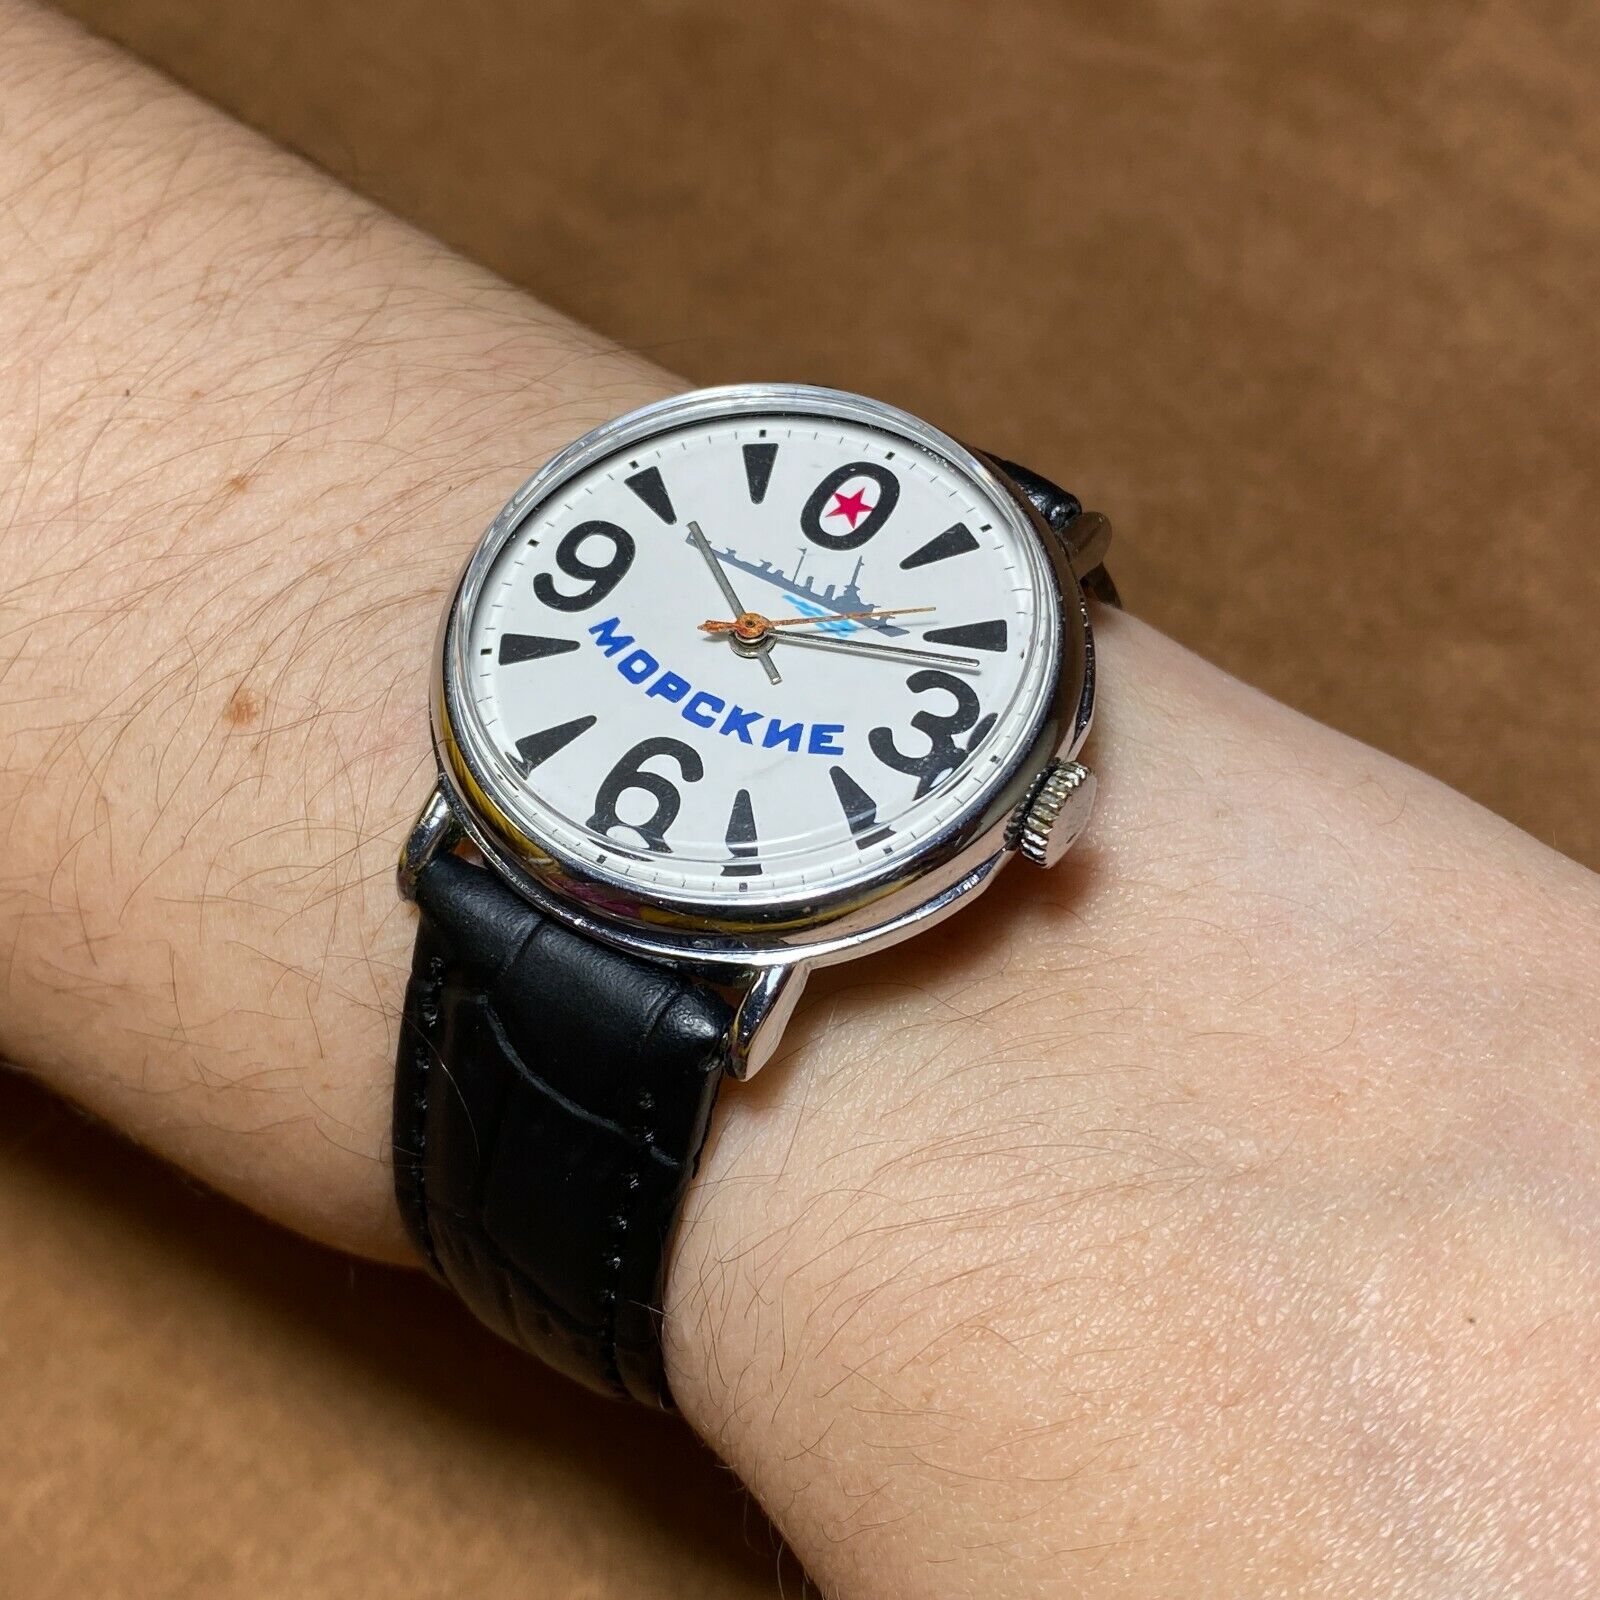 Soviet Vintage Wristwatch Raketa BIG ZERO Marine Watch Watch Montre Homme USSR